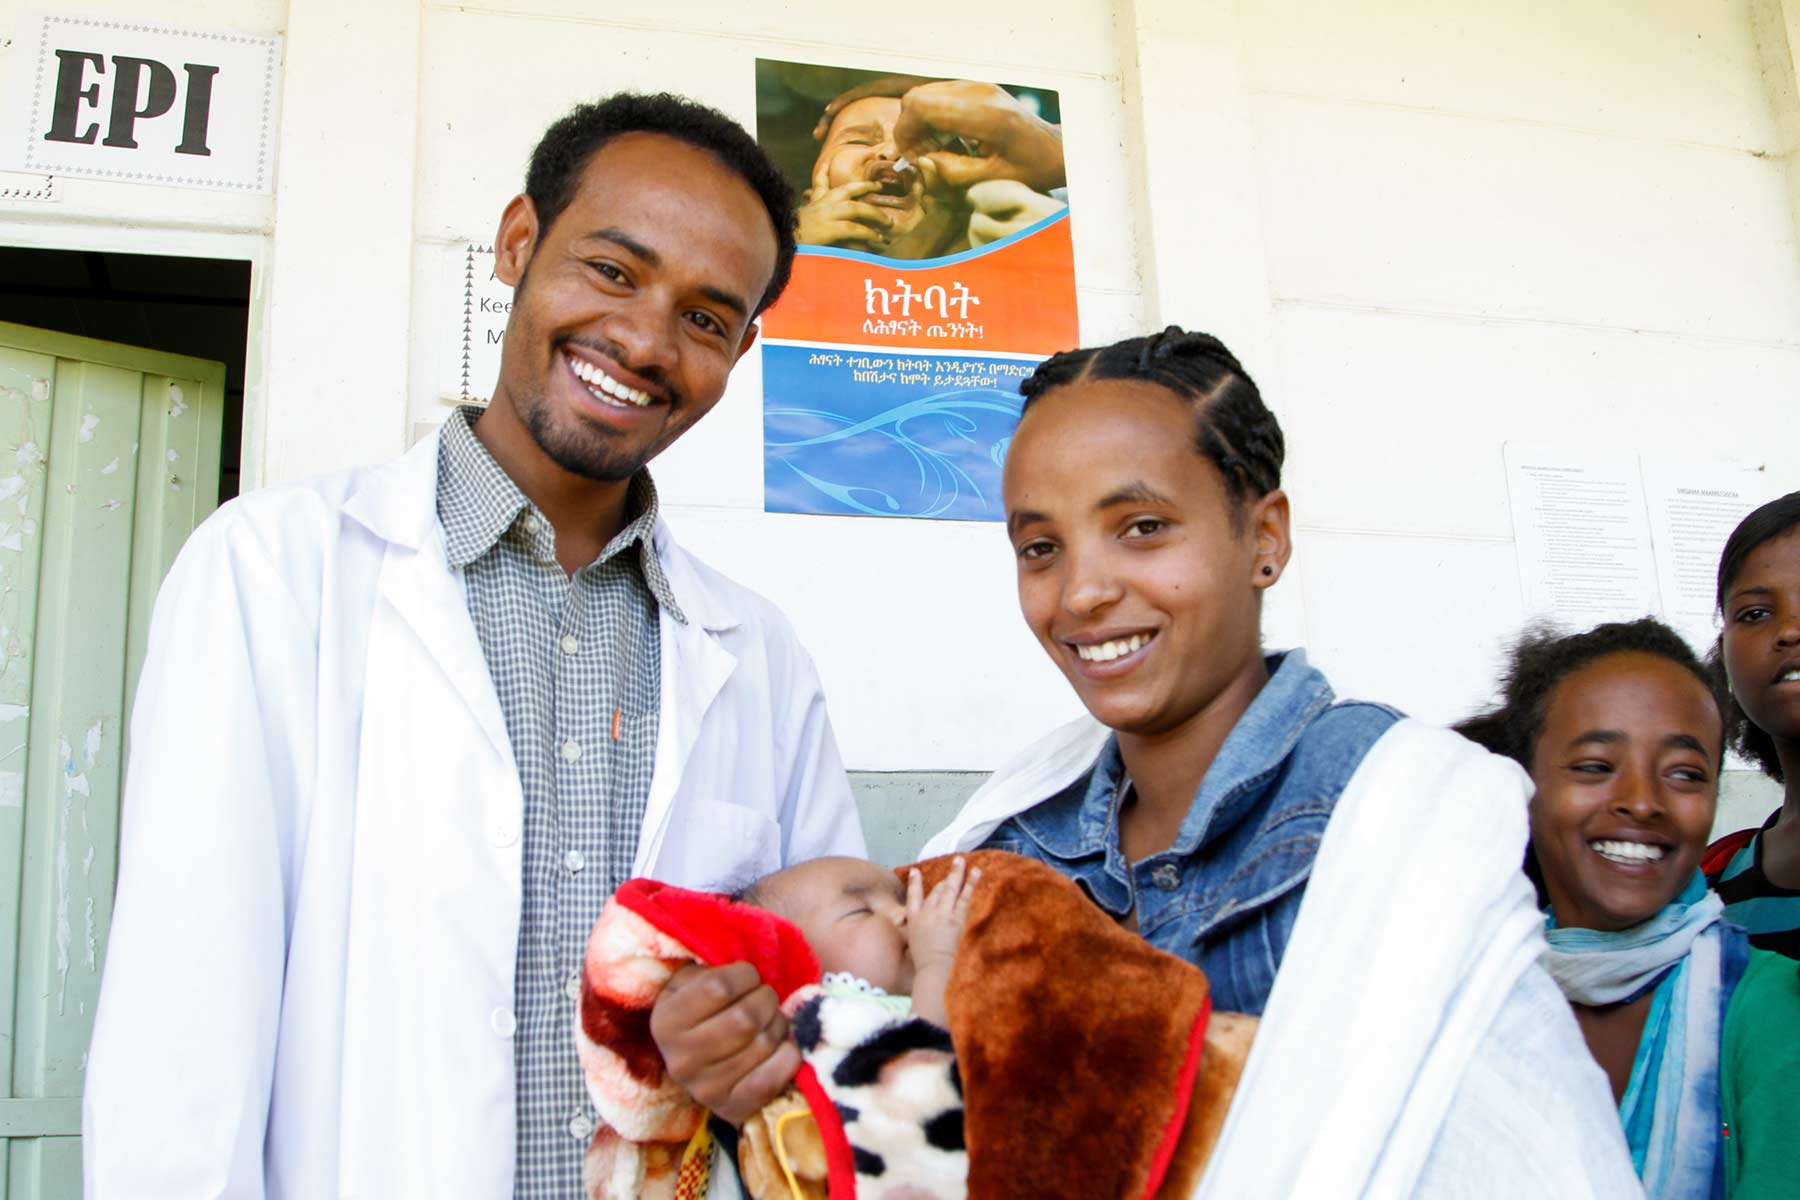 Doktor und Patientin lächeln in die Kamera mit Kind im Arm